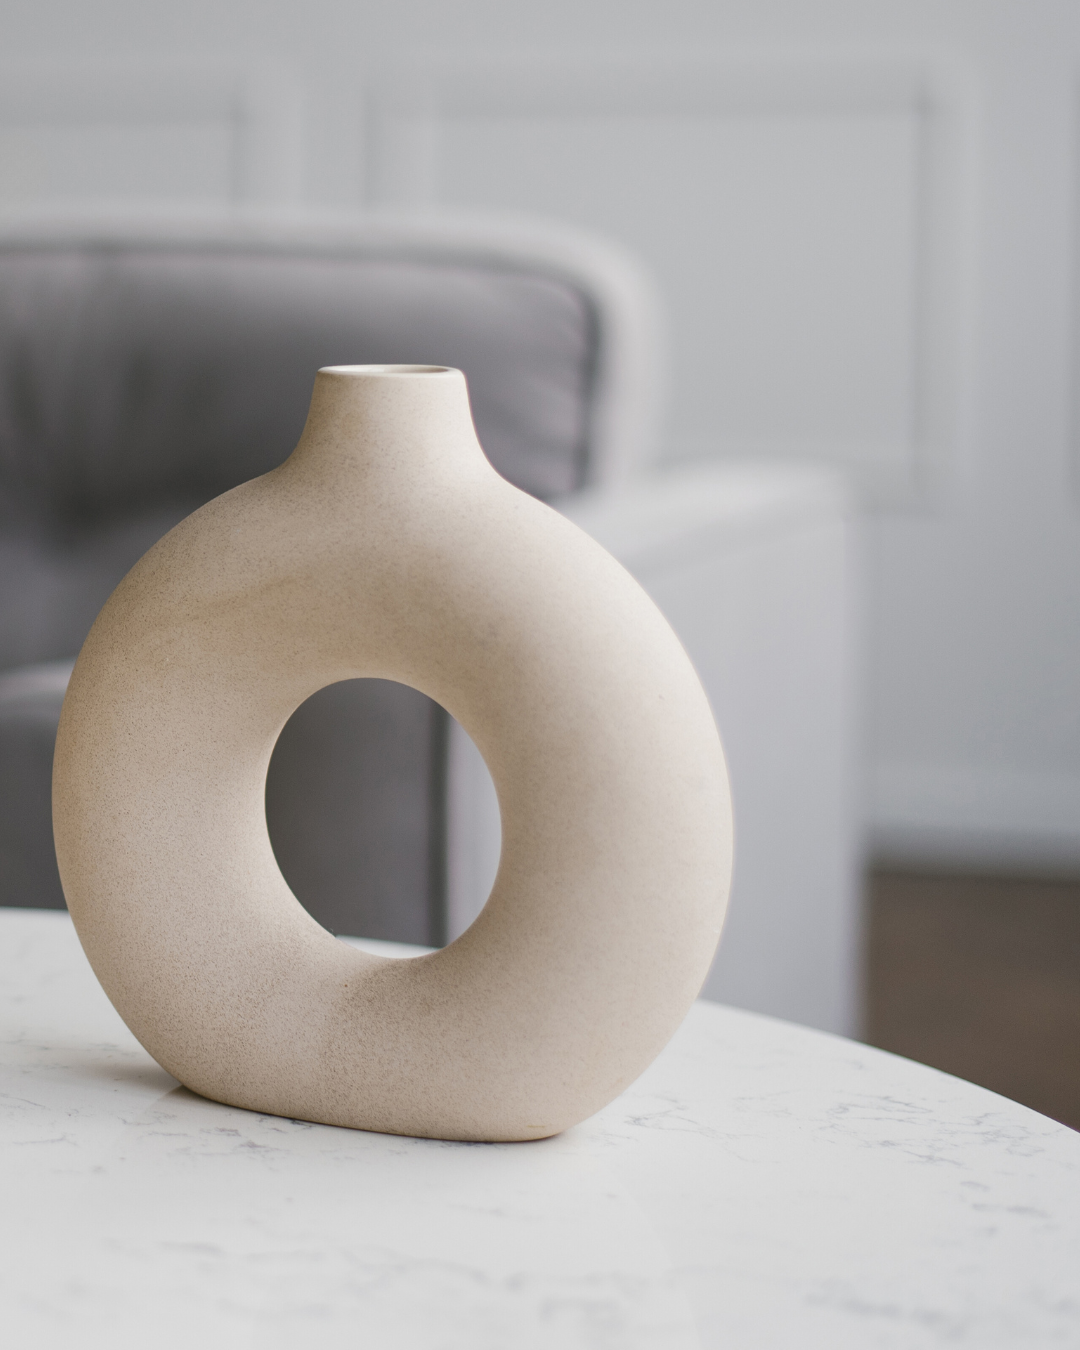 Home Decorative Ceramic Vase